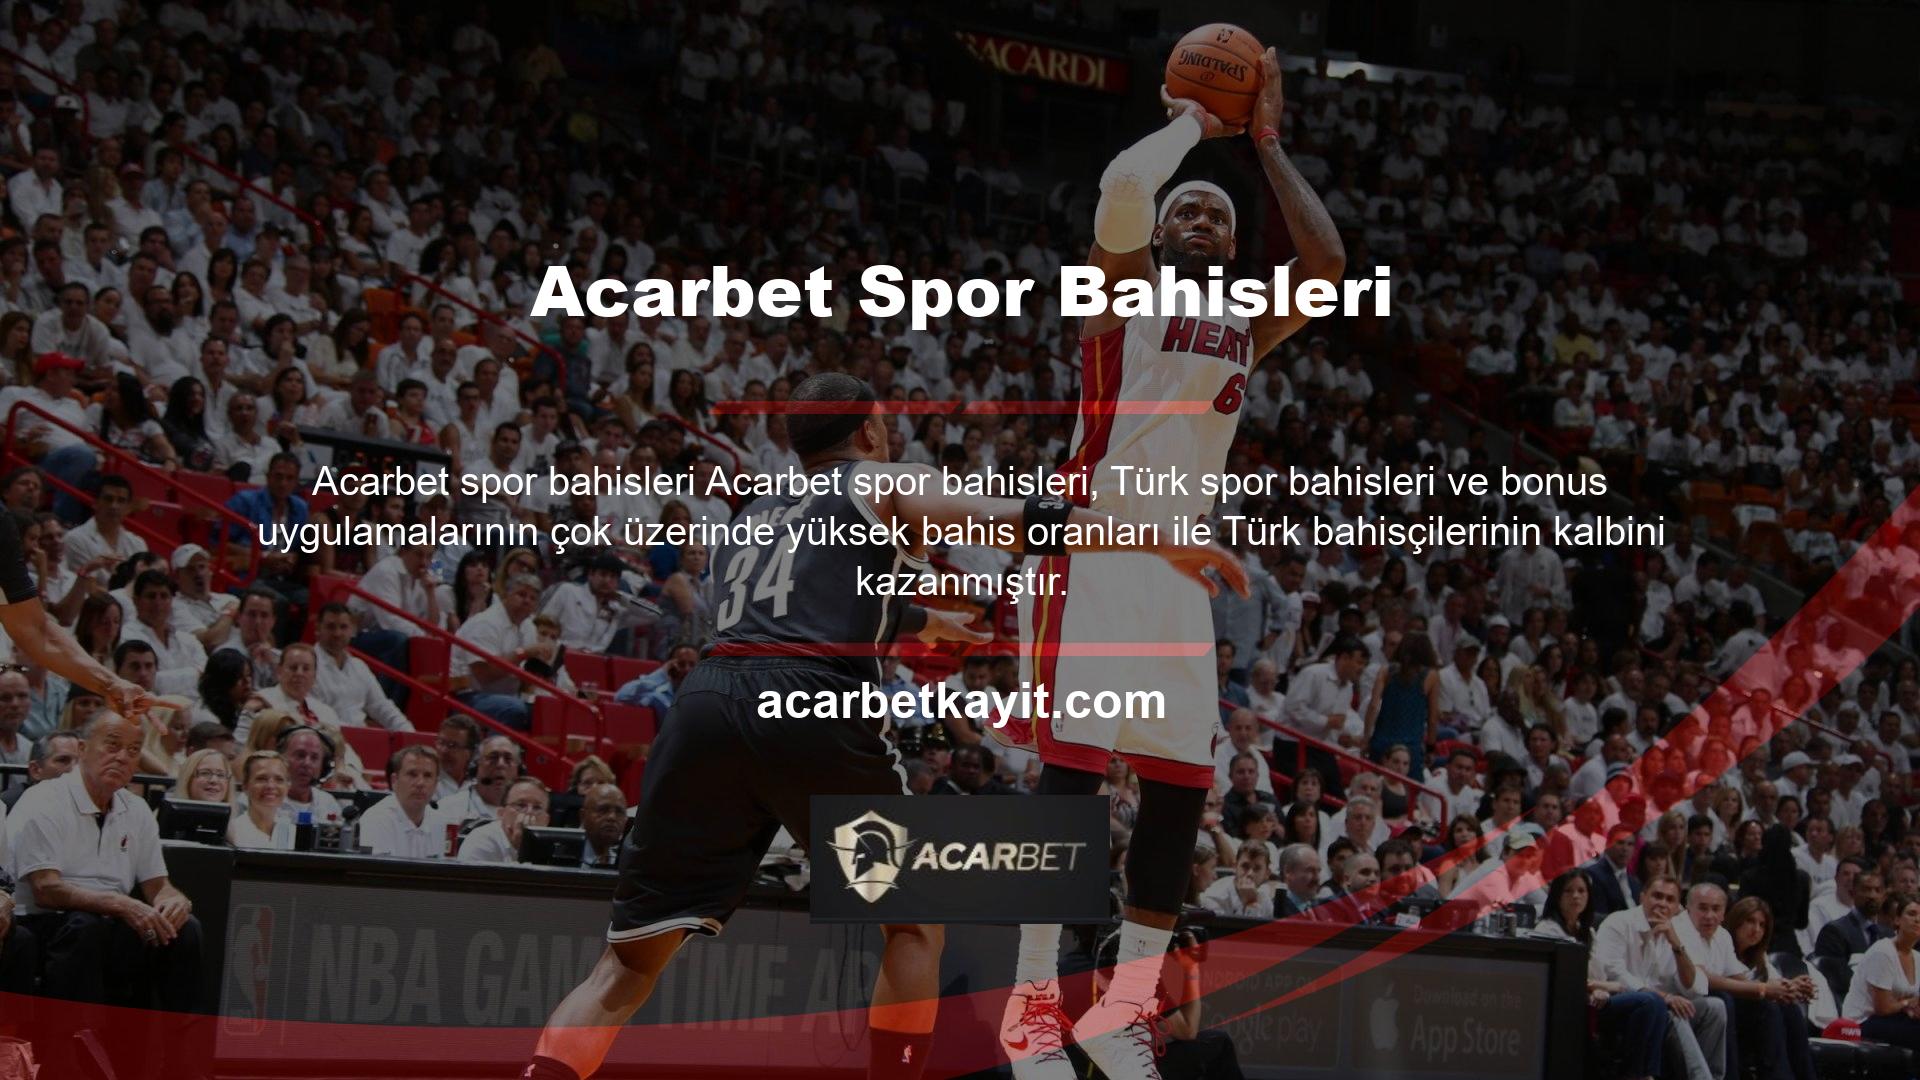 Acarbet, yüksek itibarı nedeniyle Türk oyun tutkunlarının gözdesi ve oyun sektöründe çok güçlü bir konuma sahip Güvenilir ve kaliteli bir hizmet verdiğinizi biliyorum